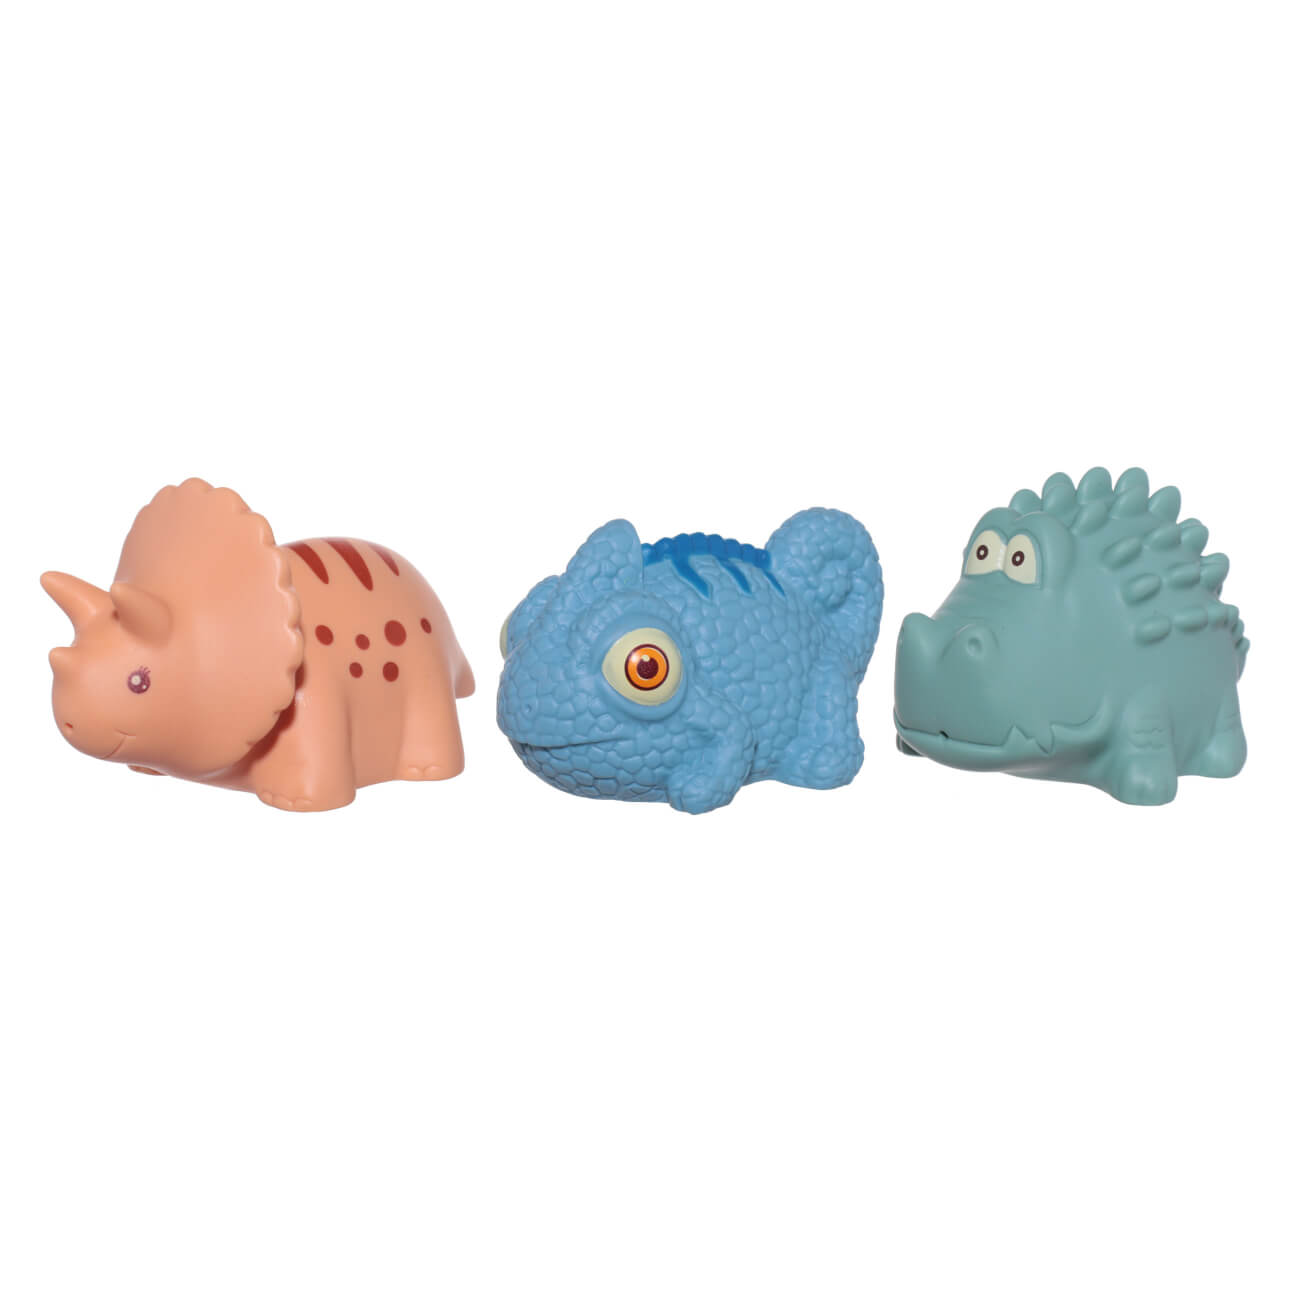 Набор игрушек для купания, 3 пр, ПВХ, цветной, Хамелеон/Динозавр/Крокодил, Kiddy развивающая игра мастер игрушек сортер со смешариками